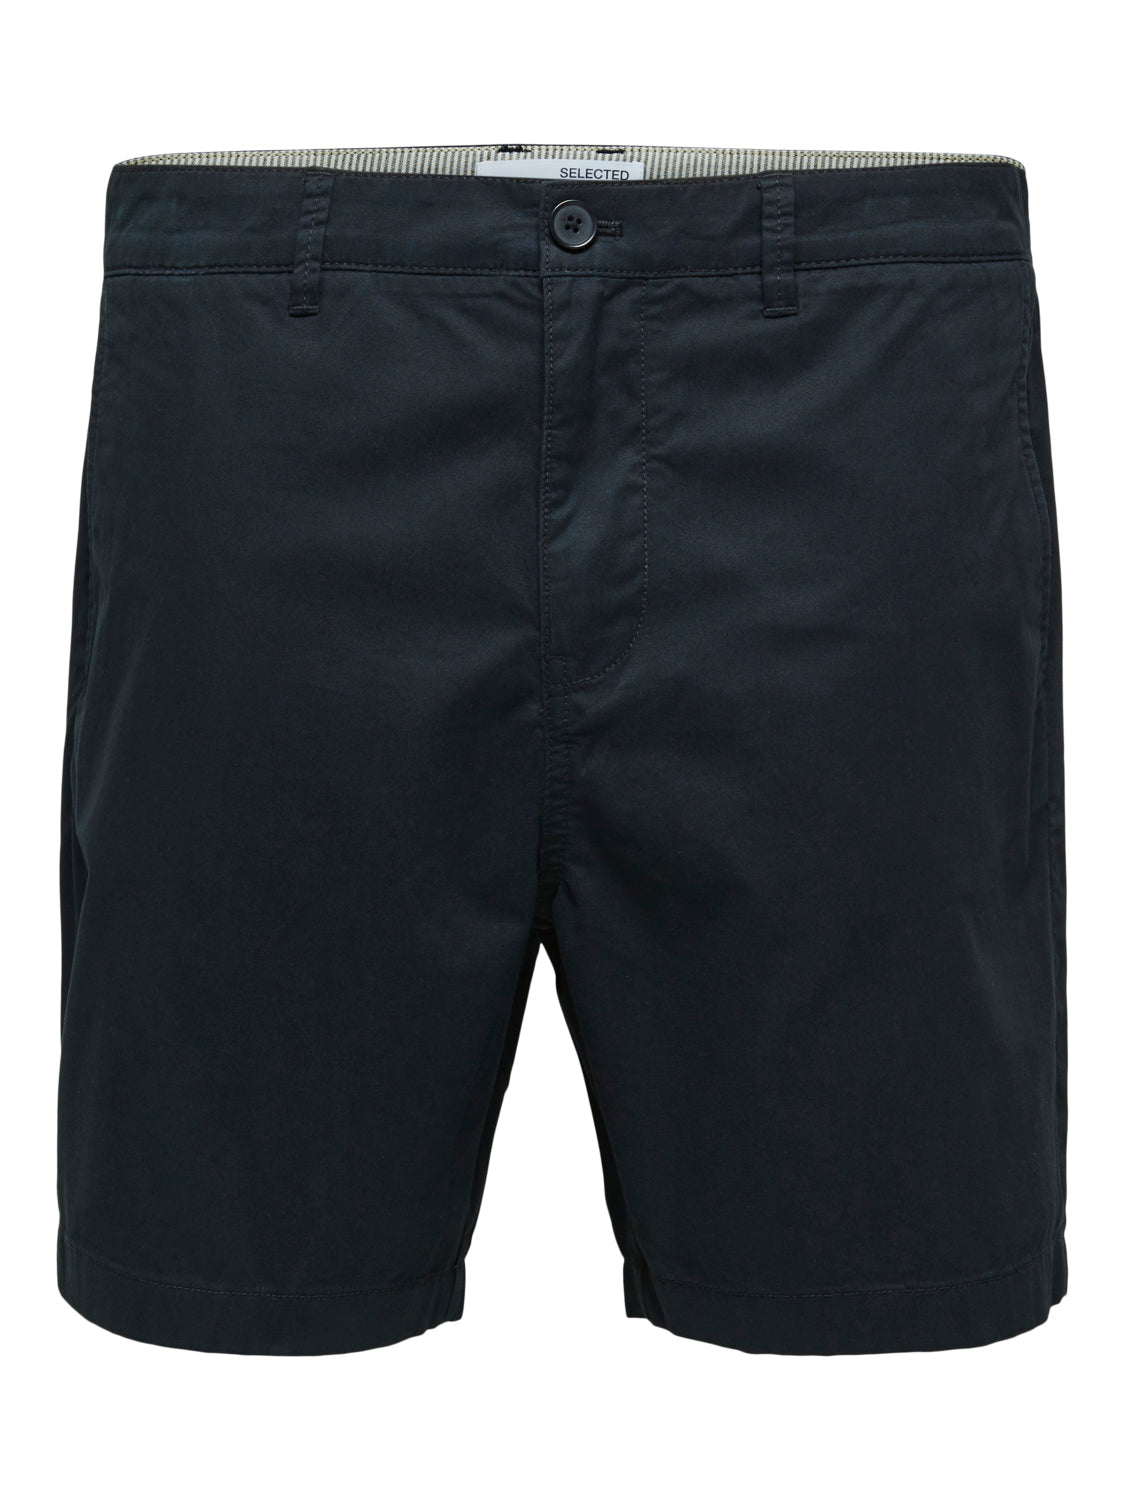 SLHCOMFORT-HOMME Shorts - Black